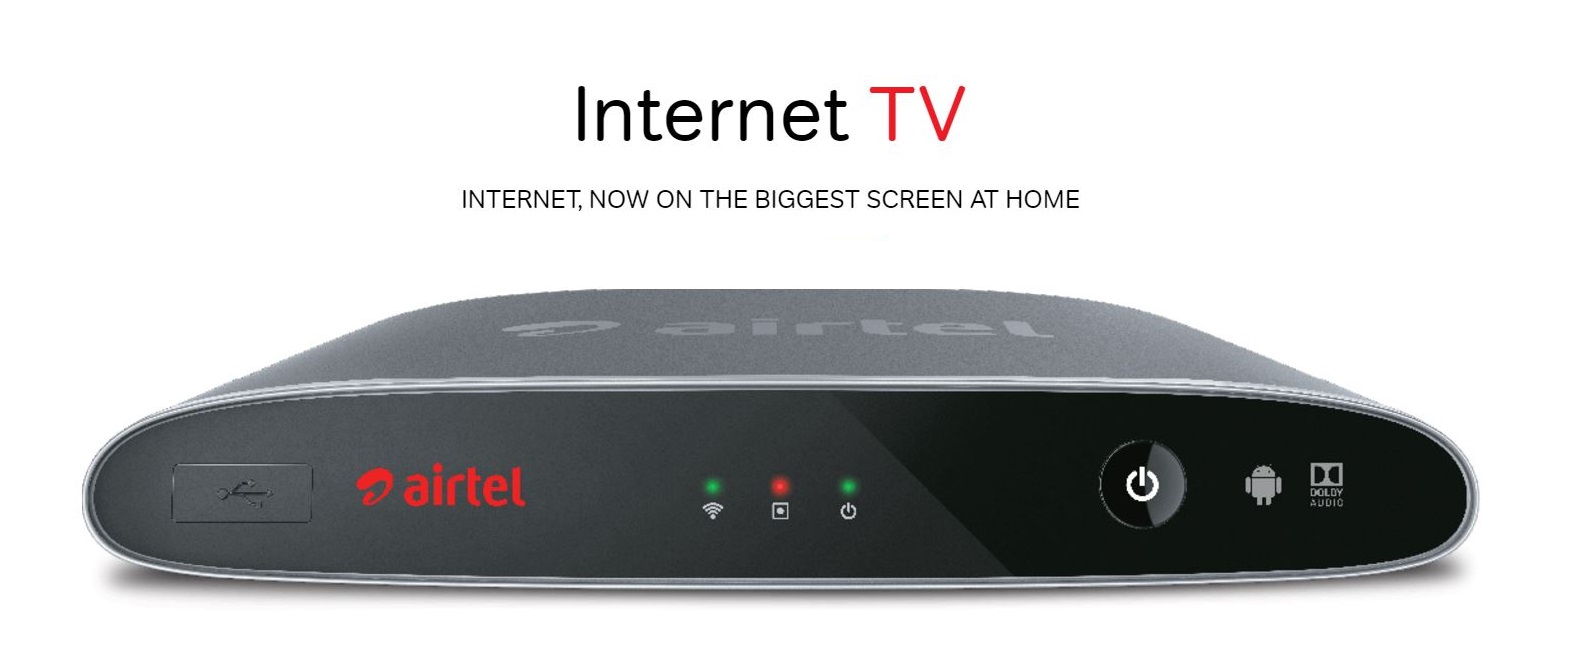 Veelgestelde vragen over Airtel Internet TV, gebruikersvragen en antwoorden